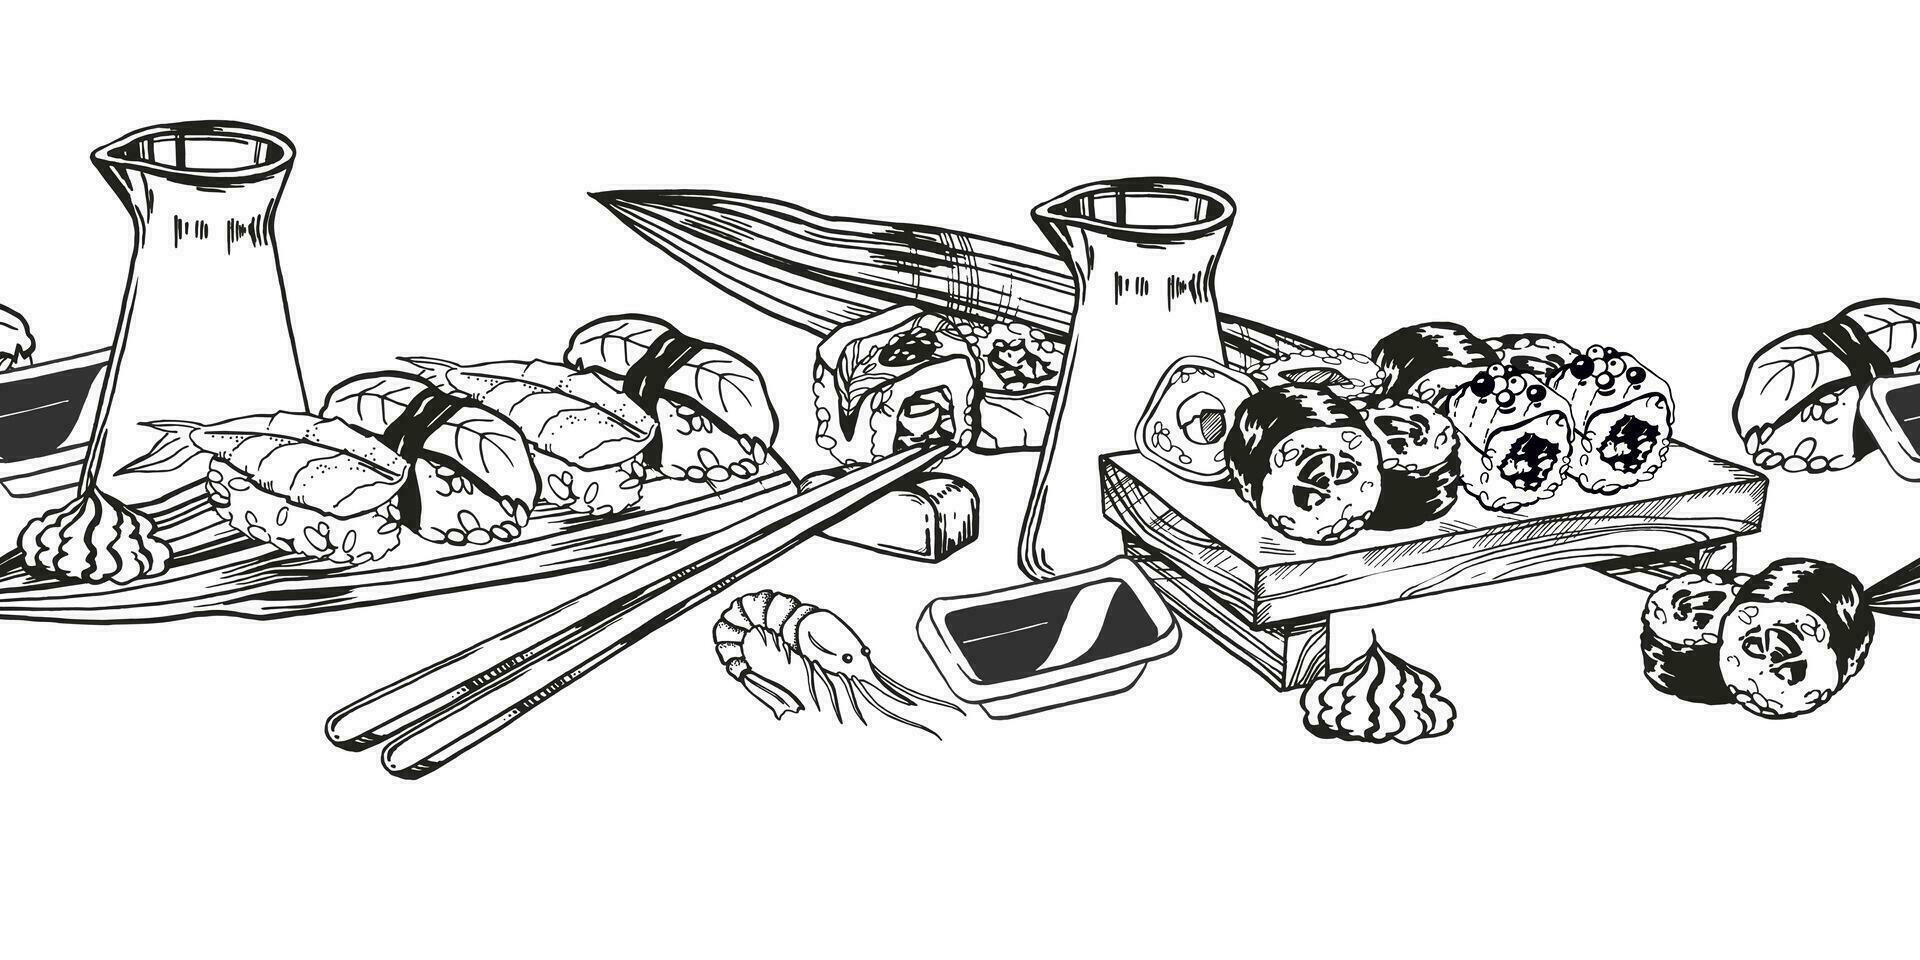 vektor sömlös gräns av japansk mat tema med rullar, sushi, sashimi, soja sås, ätpinnar, hand dragen inked svartvit skiss av skaldjur, mat illustration isolerat på vit bakgrund